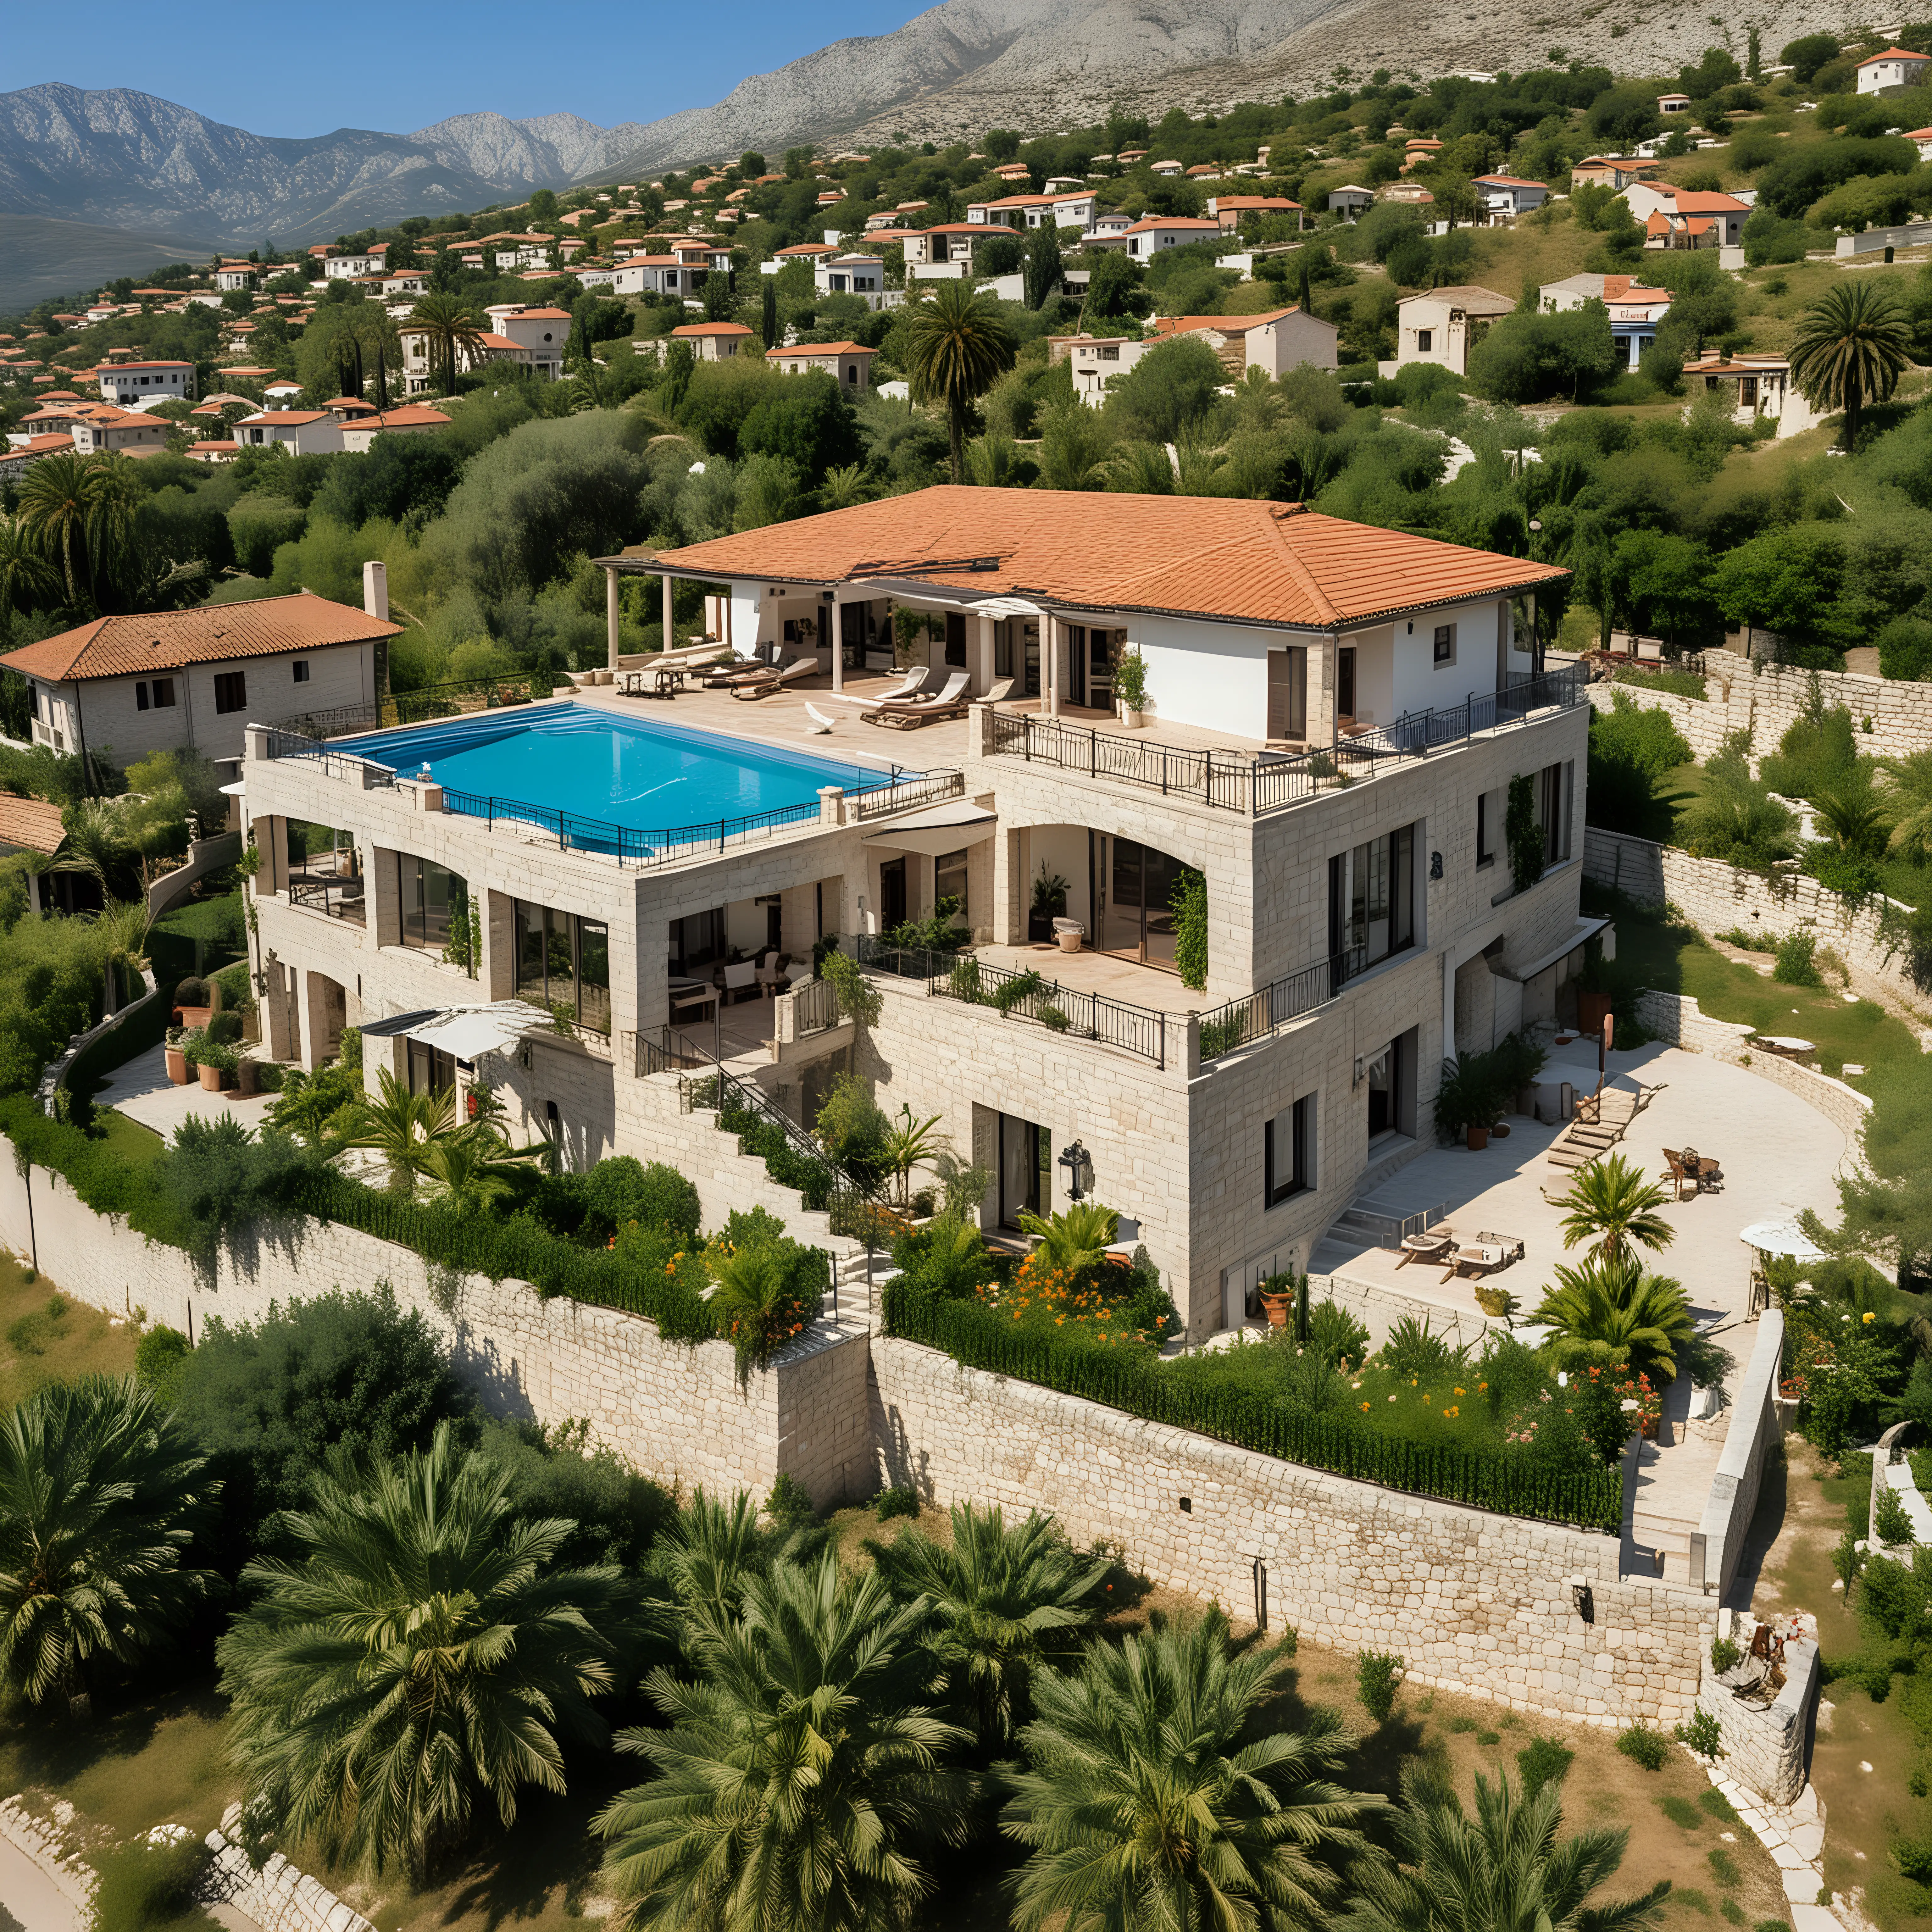 Luxurious Mediterranean Villas with Garden Oasis in Stari Bar Montenegro